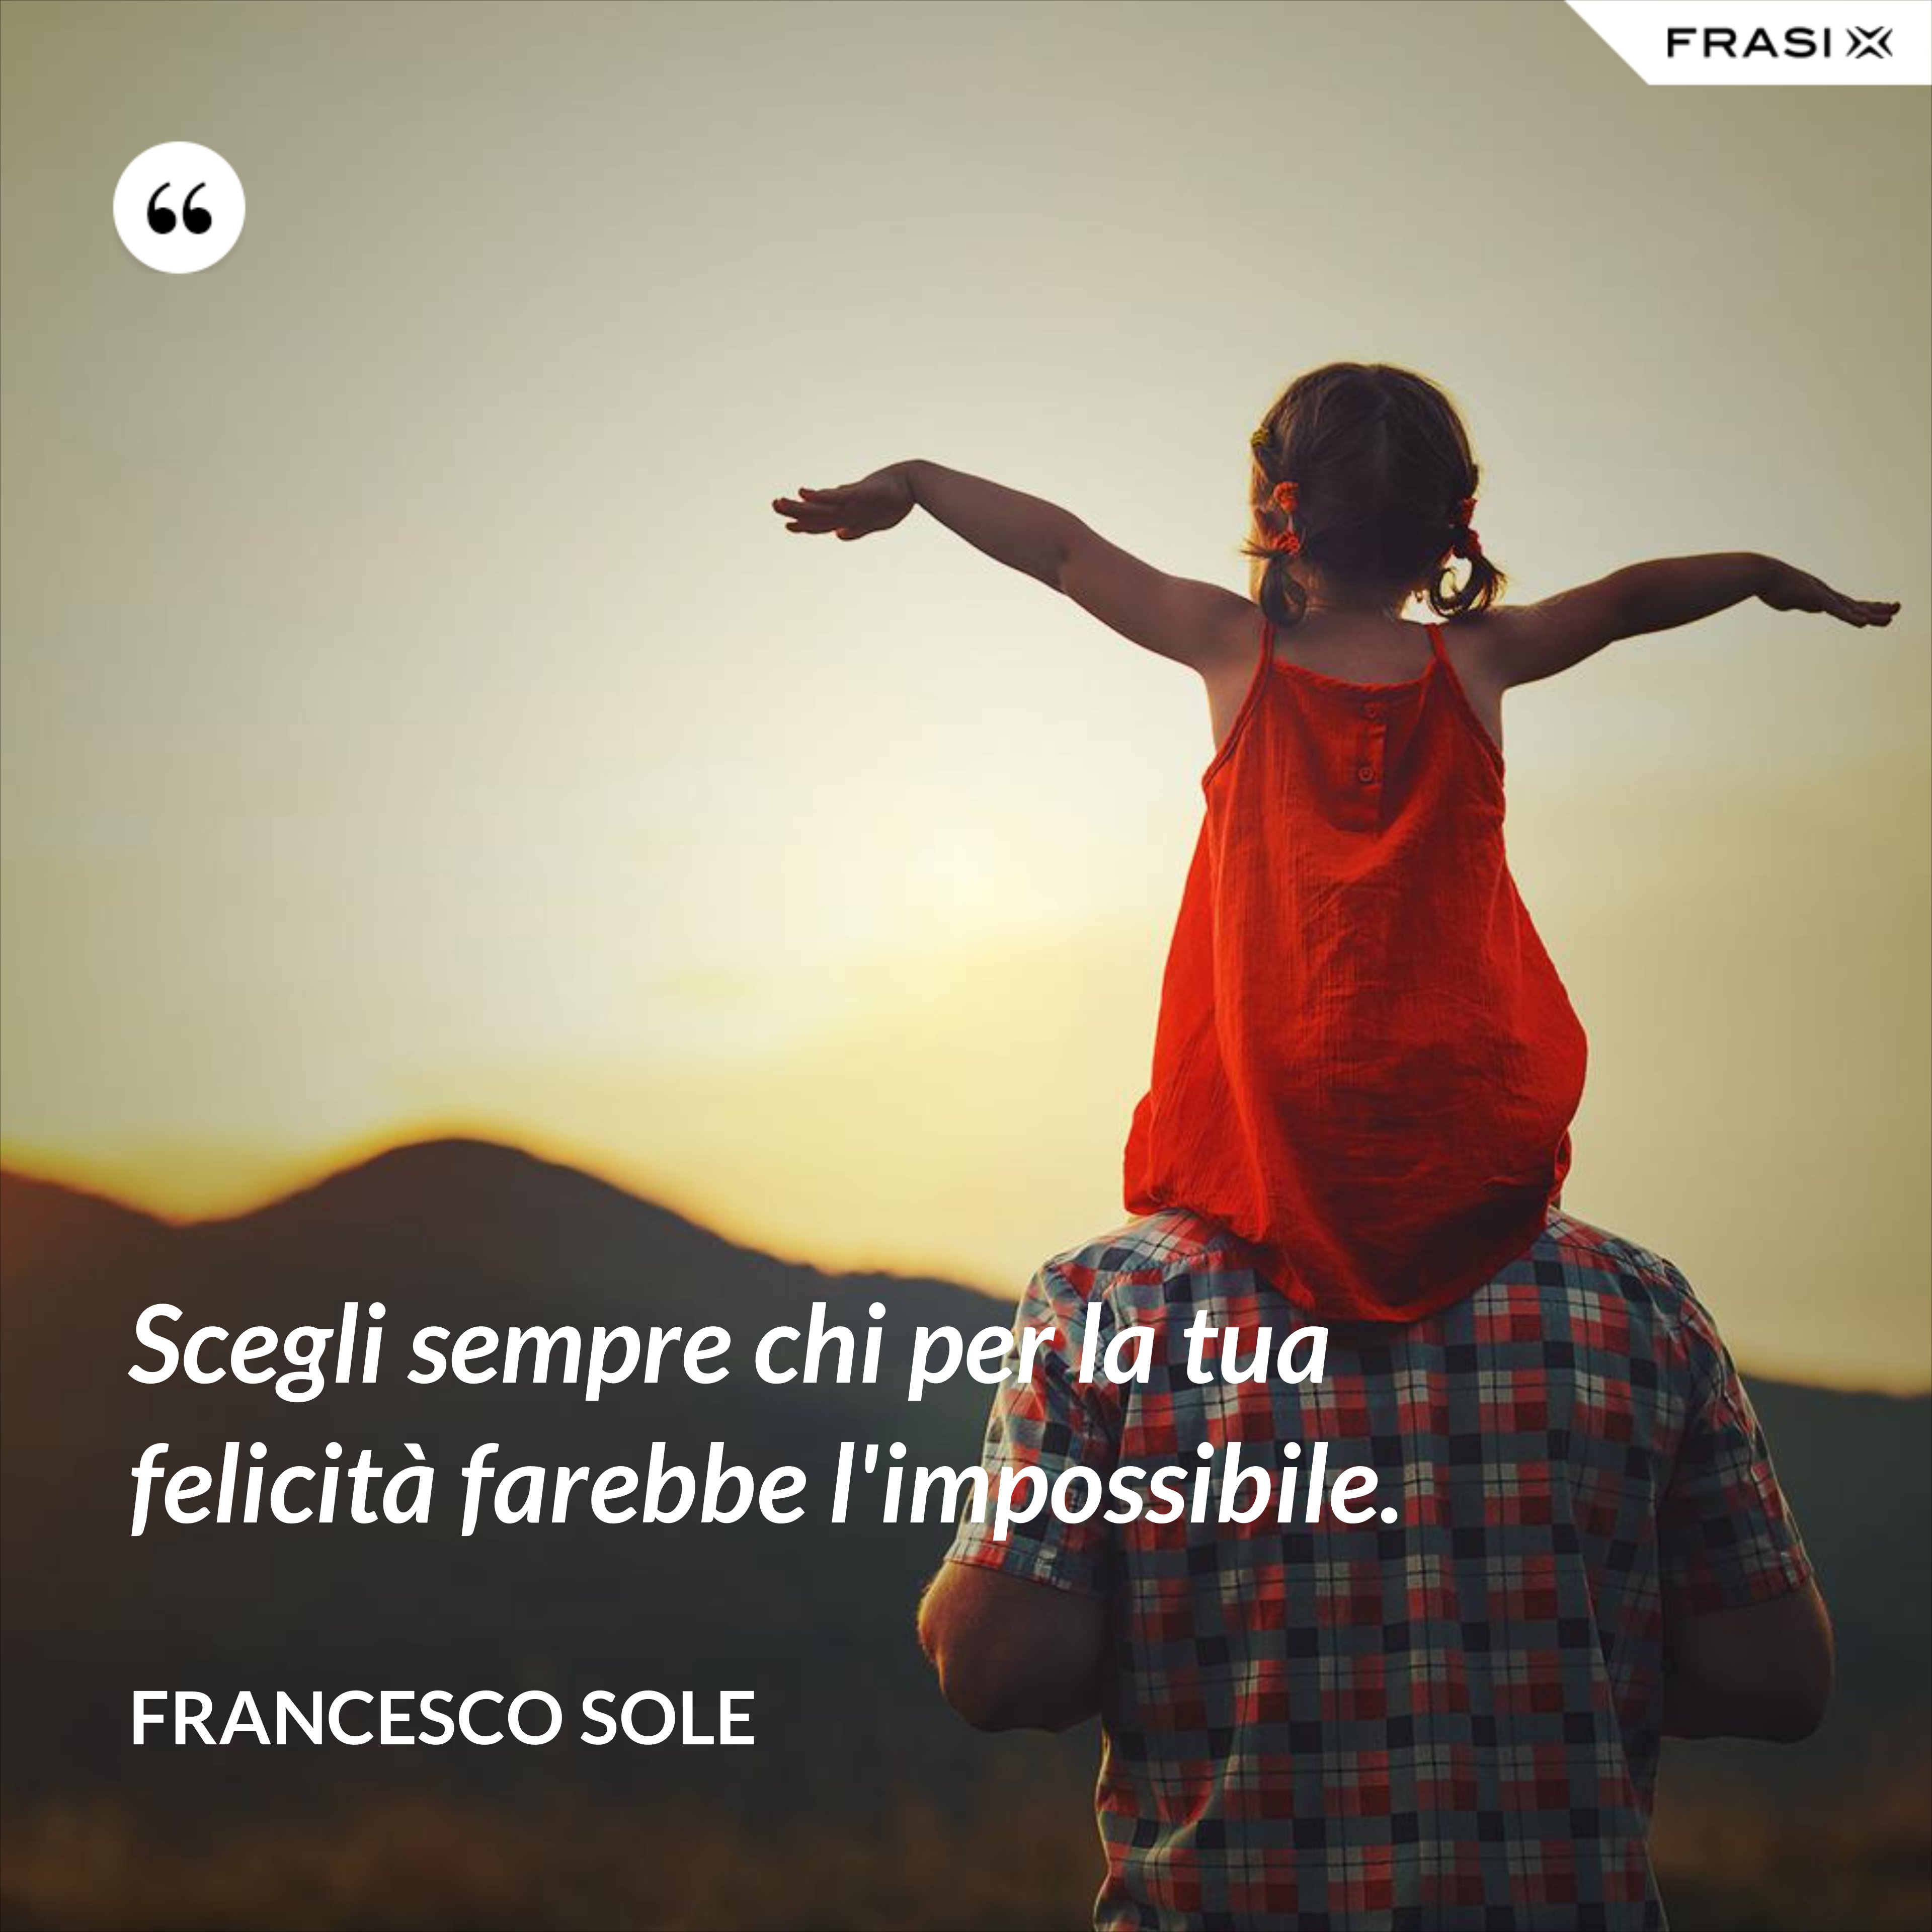 Scegli sempre chi per la tua felicità farebbe l'impossibile. - Francesco Sole